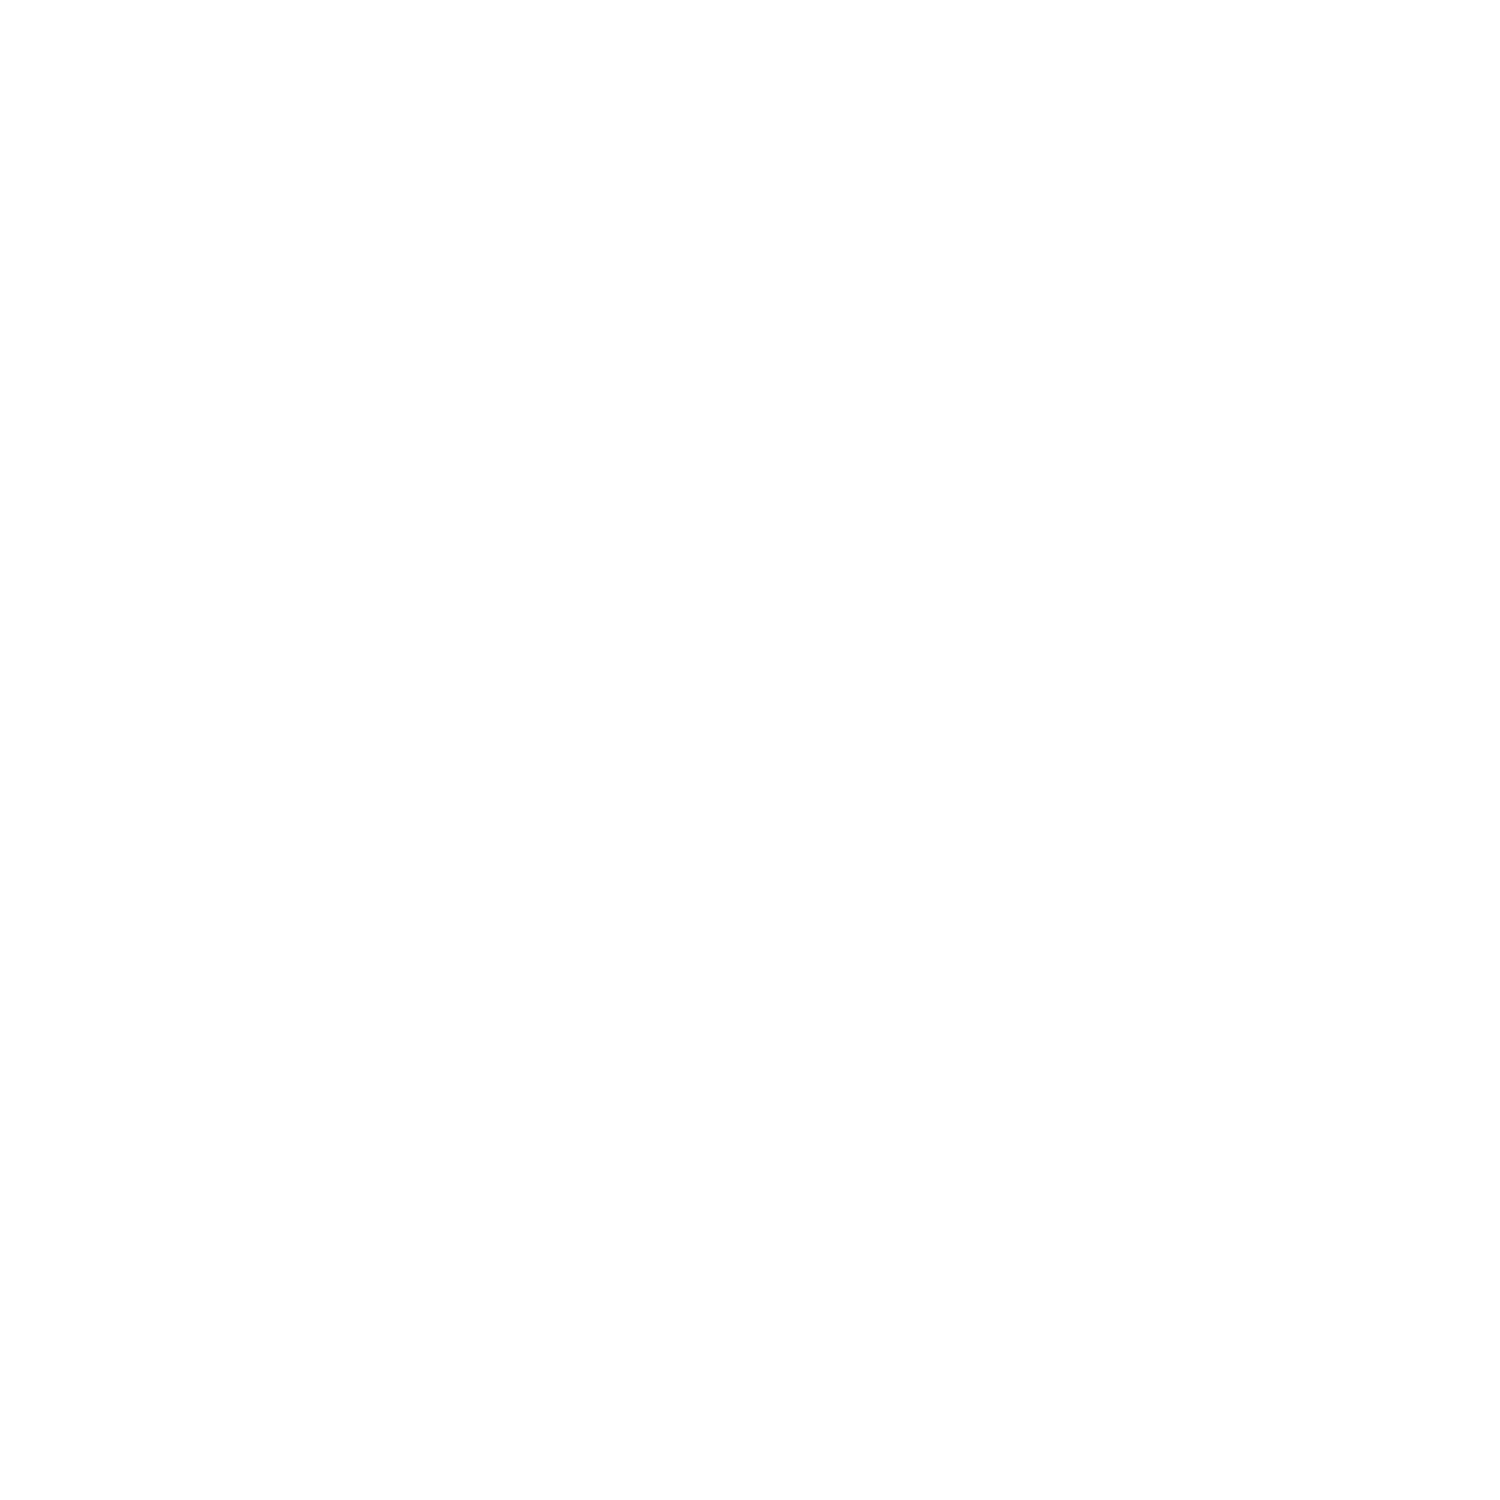 EMILY BERGTHOLD PHOTOGRAPHY